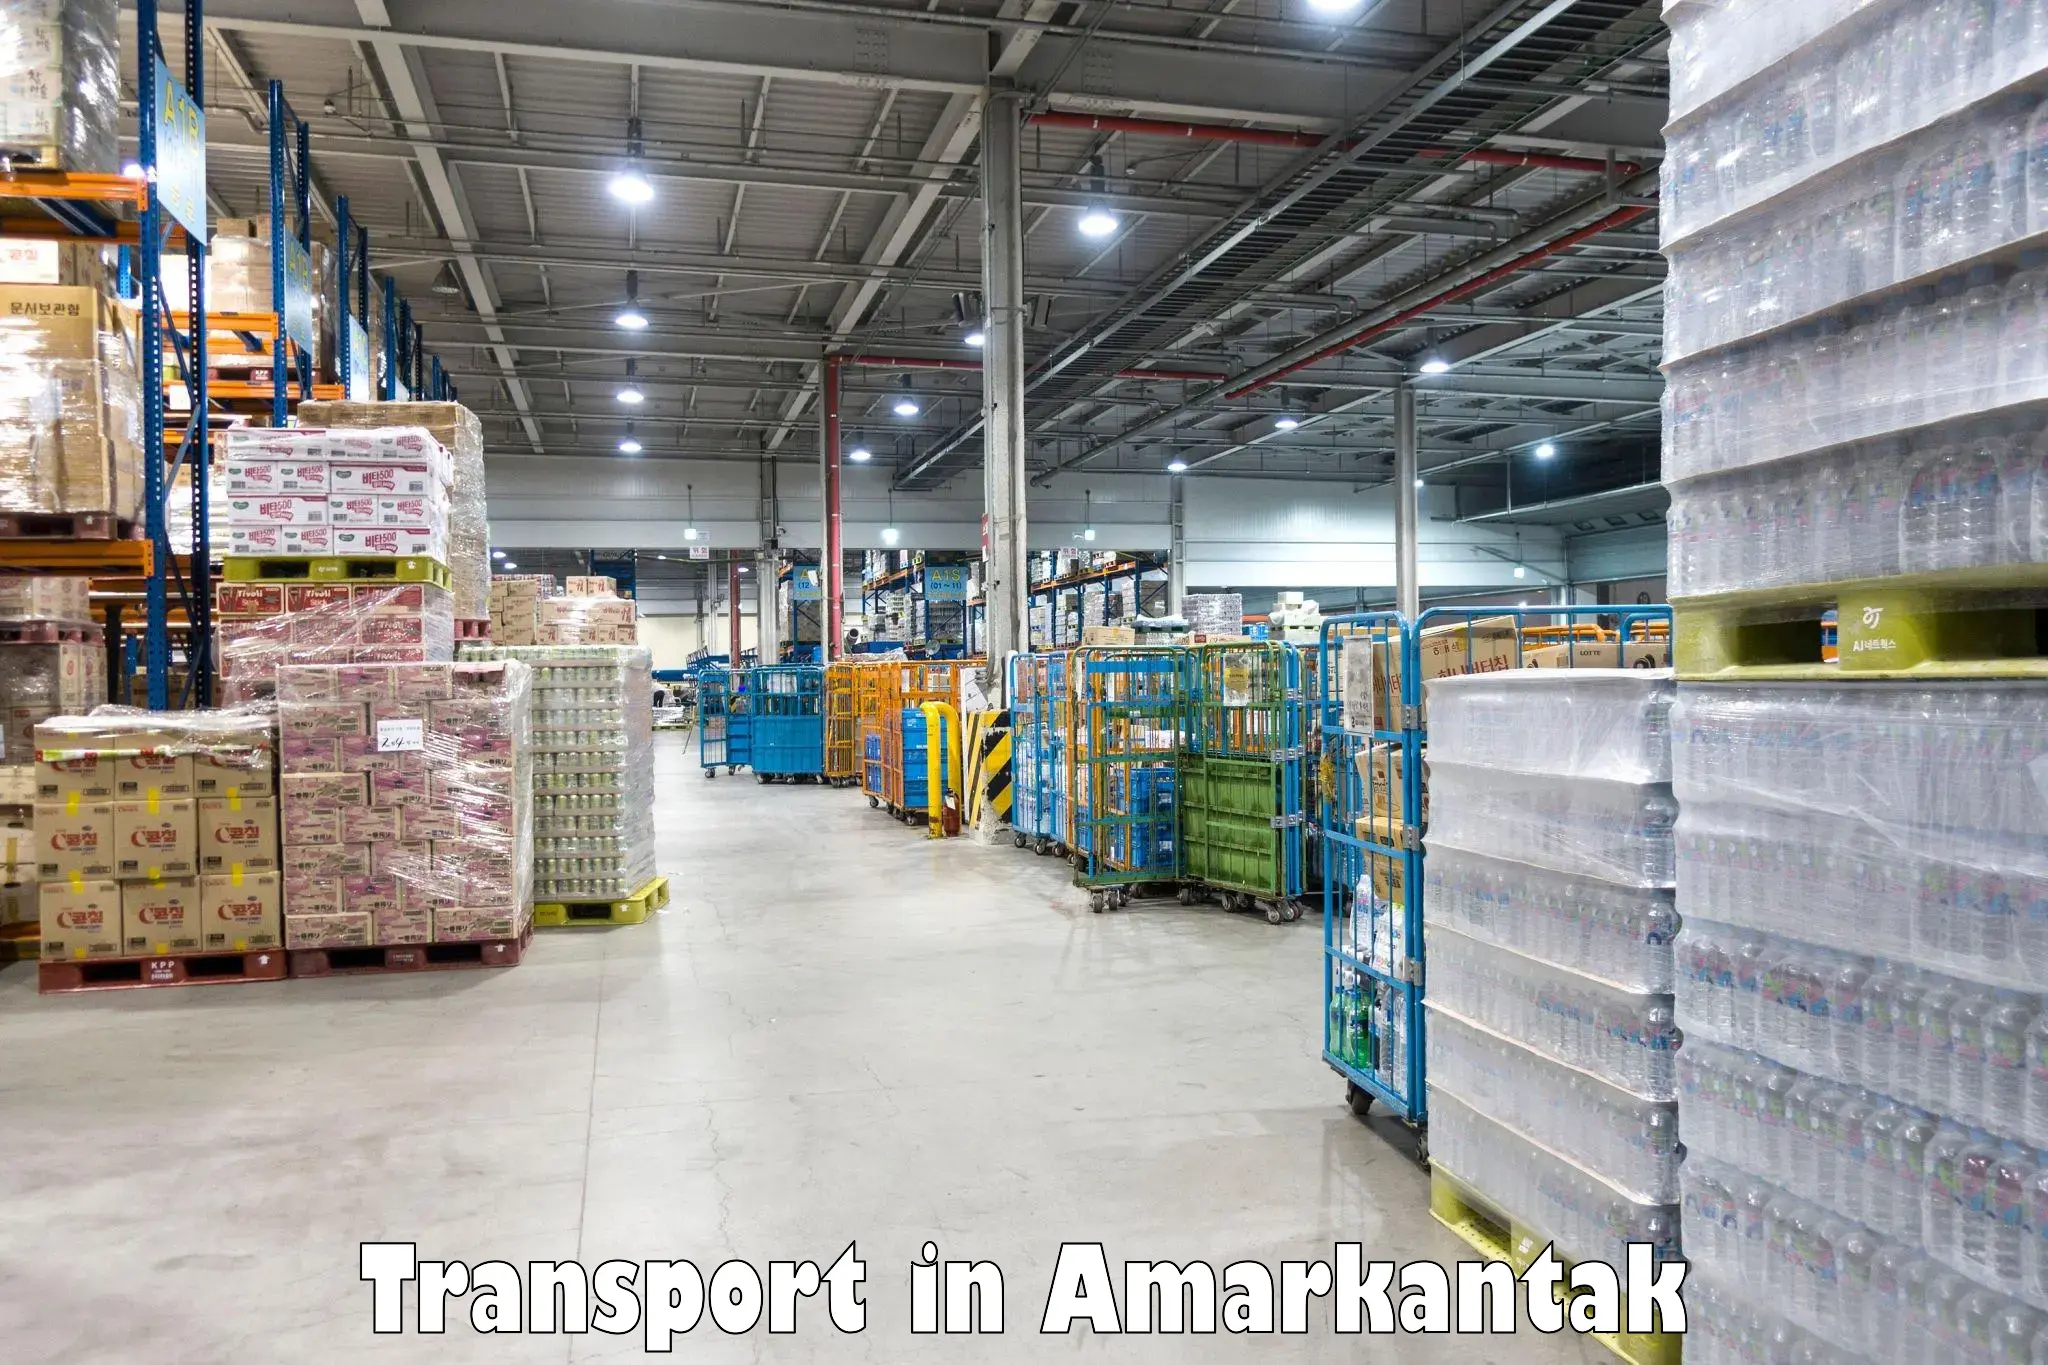 Road transport services in Amarkantak